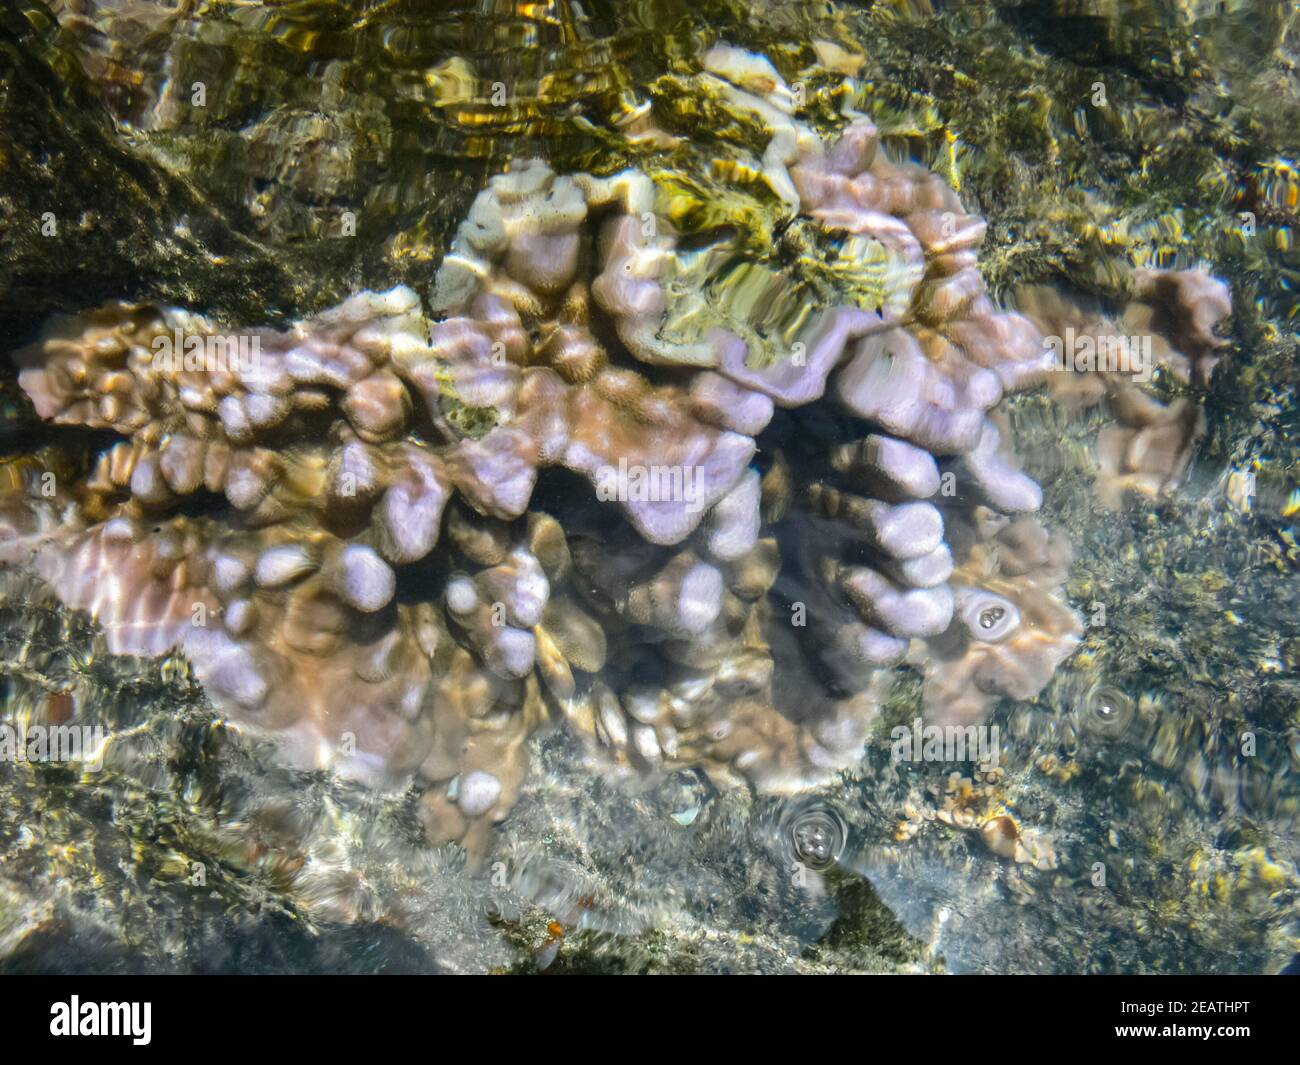 Meereskorallen in der Nähe von Ufer in seichtem Wasser. Osterinsel. Stockfoto